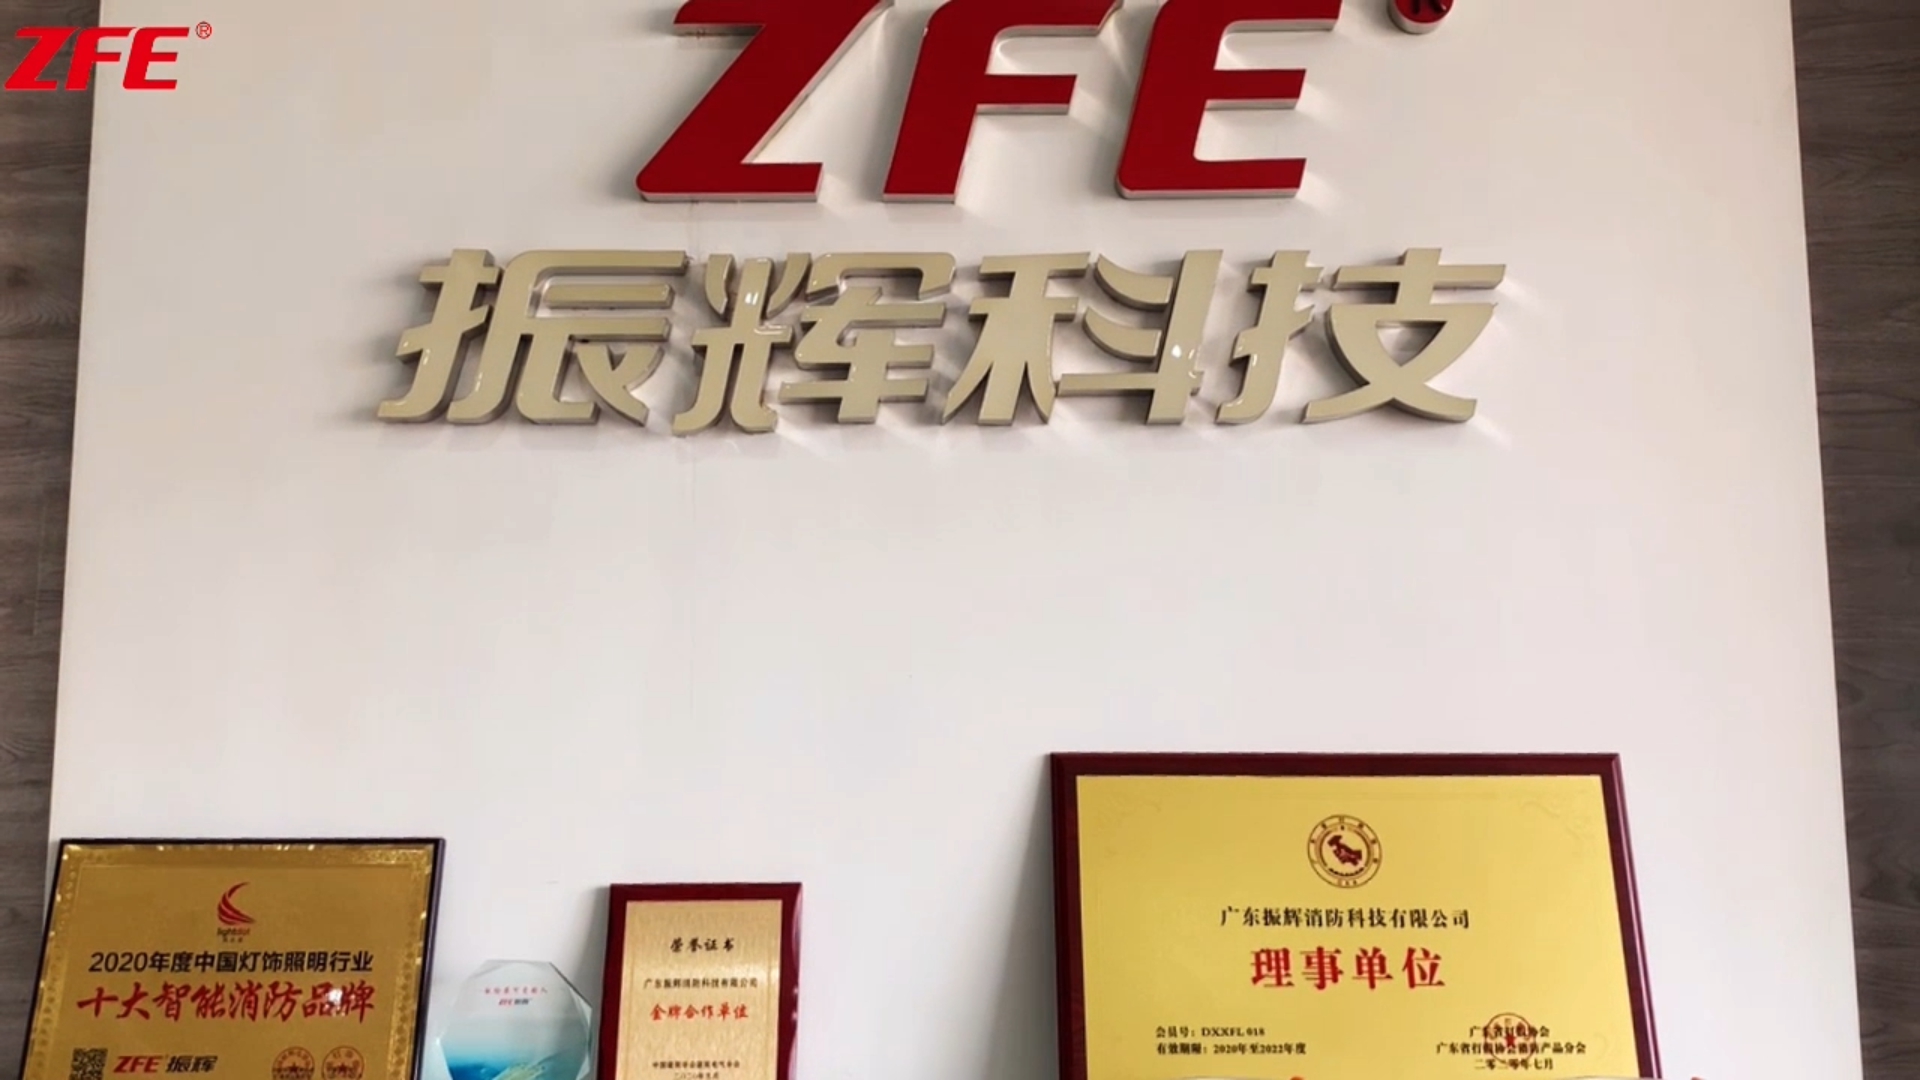 Sənaye birlikləri Guangdong Zhenhui Fire Technology Co., Ltd-ni ziyarət etməyə gəlir.